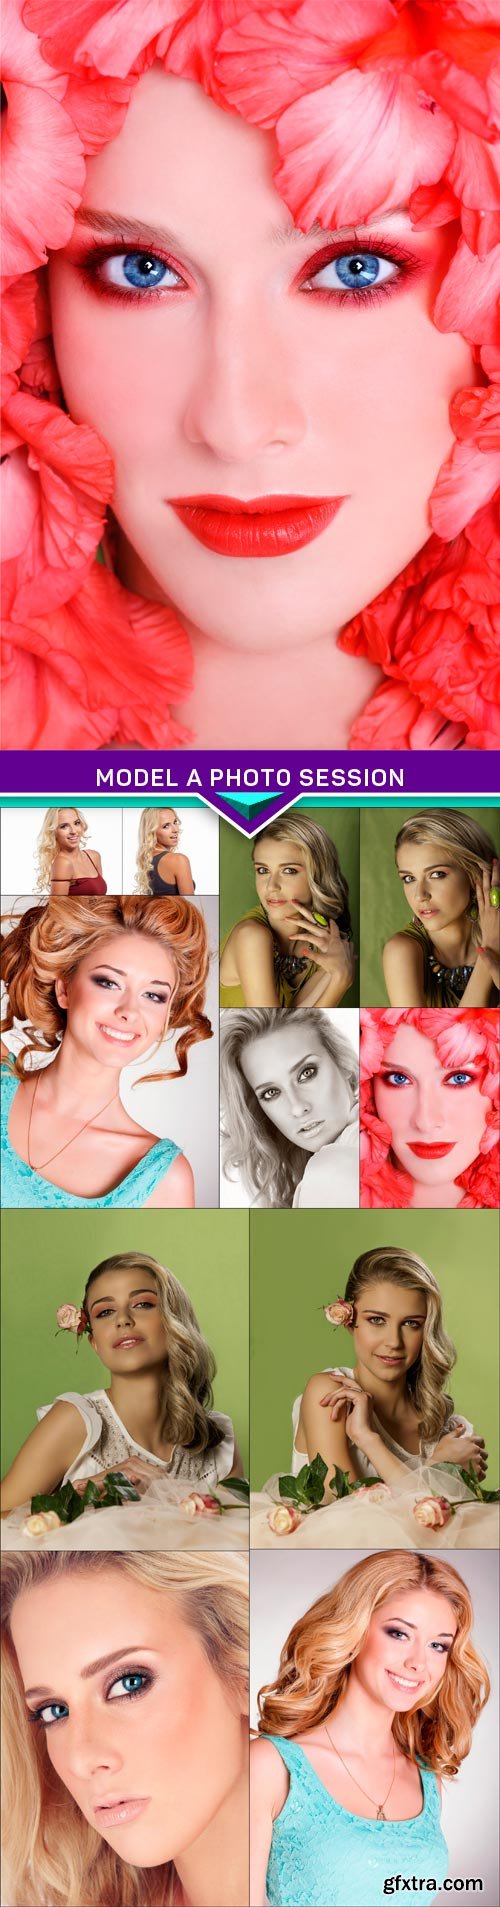 Model a photo session 12x JPEG